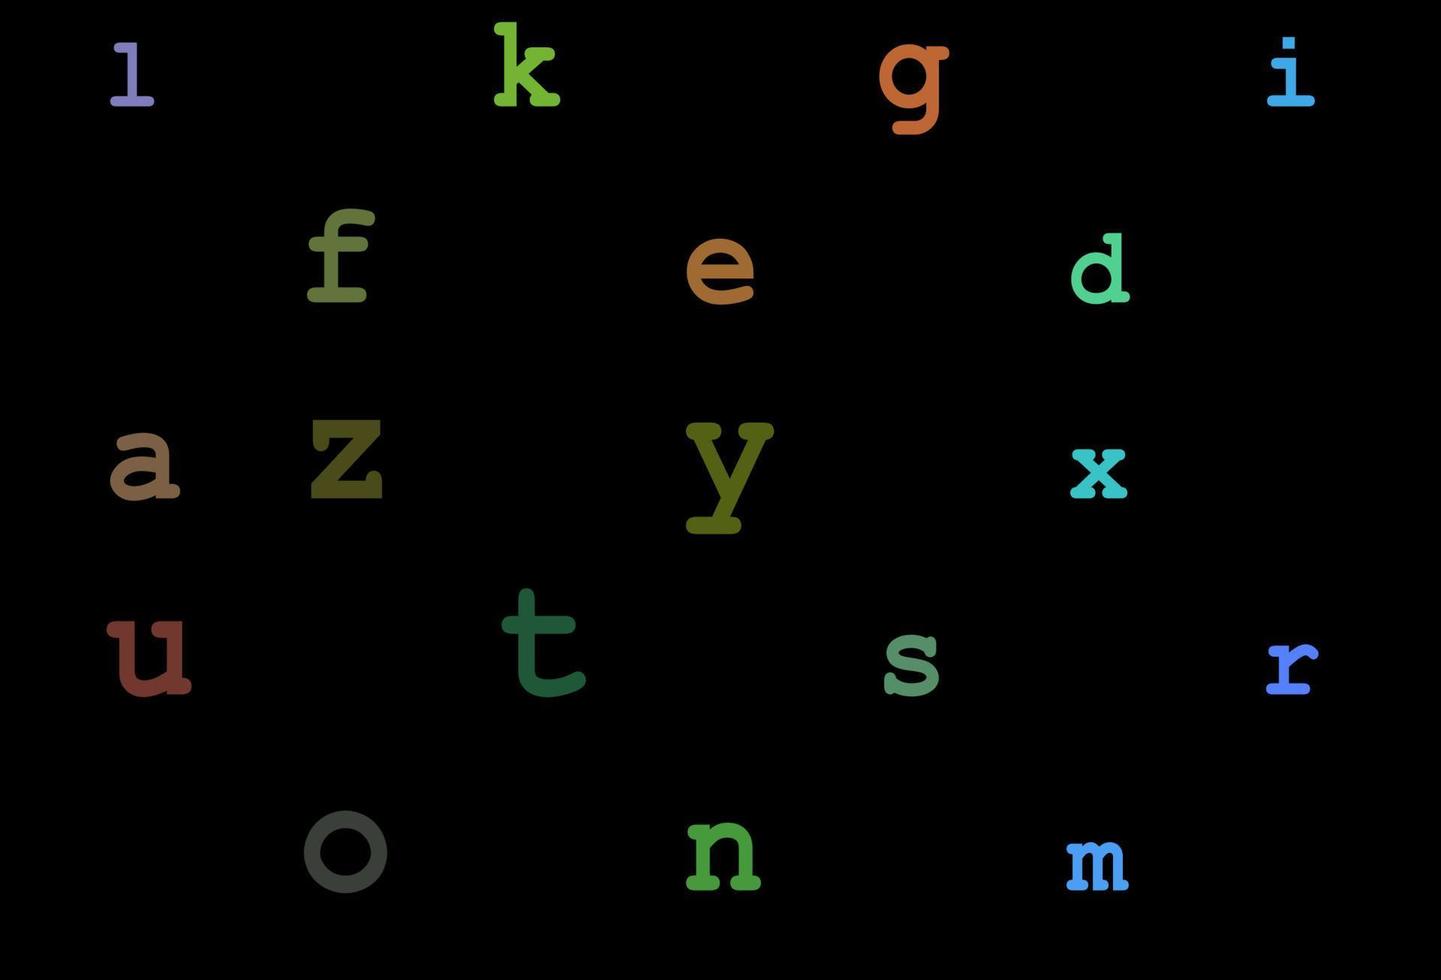 multicolore scuro, layout vettoriale arcobaleno con alfabeto latino.